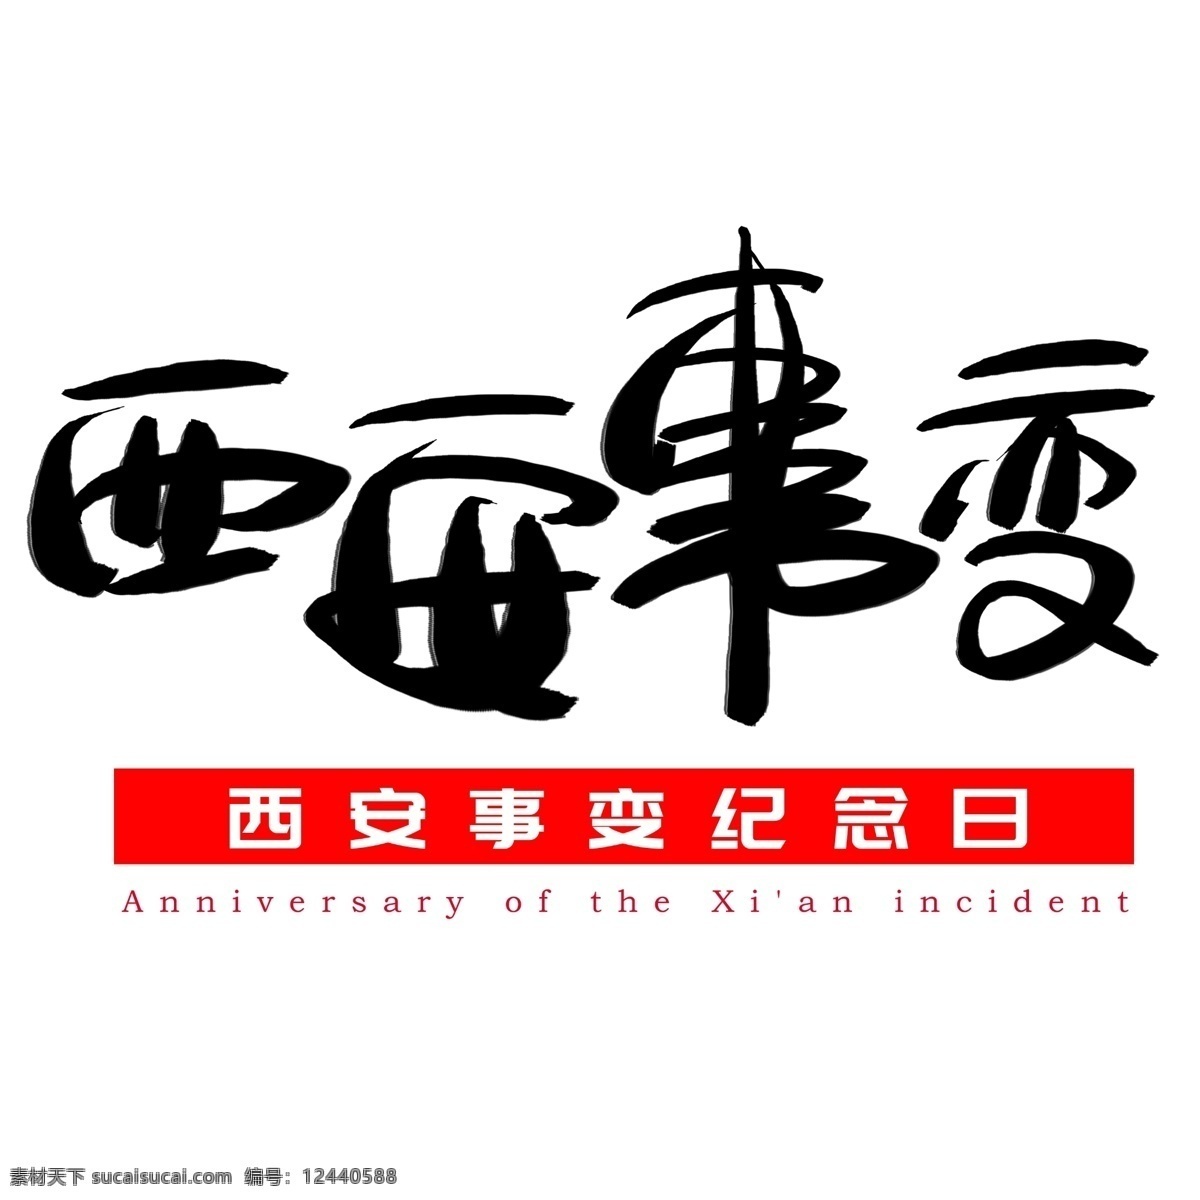 西安事变 纪念日 手写 手绘 书法艺术 字 西安 anniversary of the 事变 xian incident